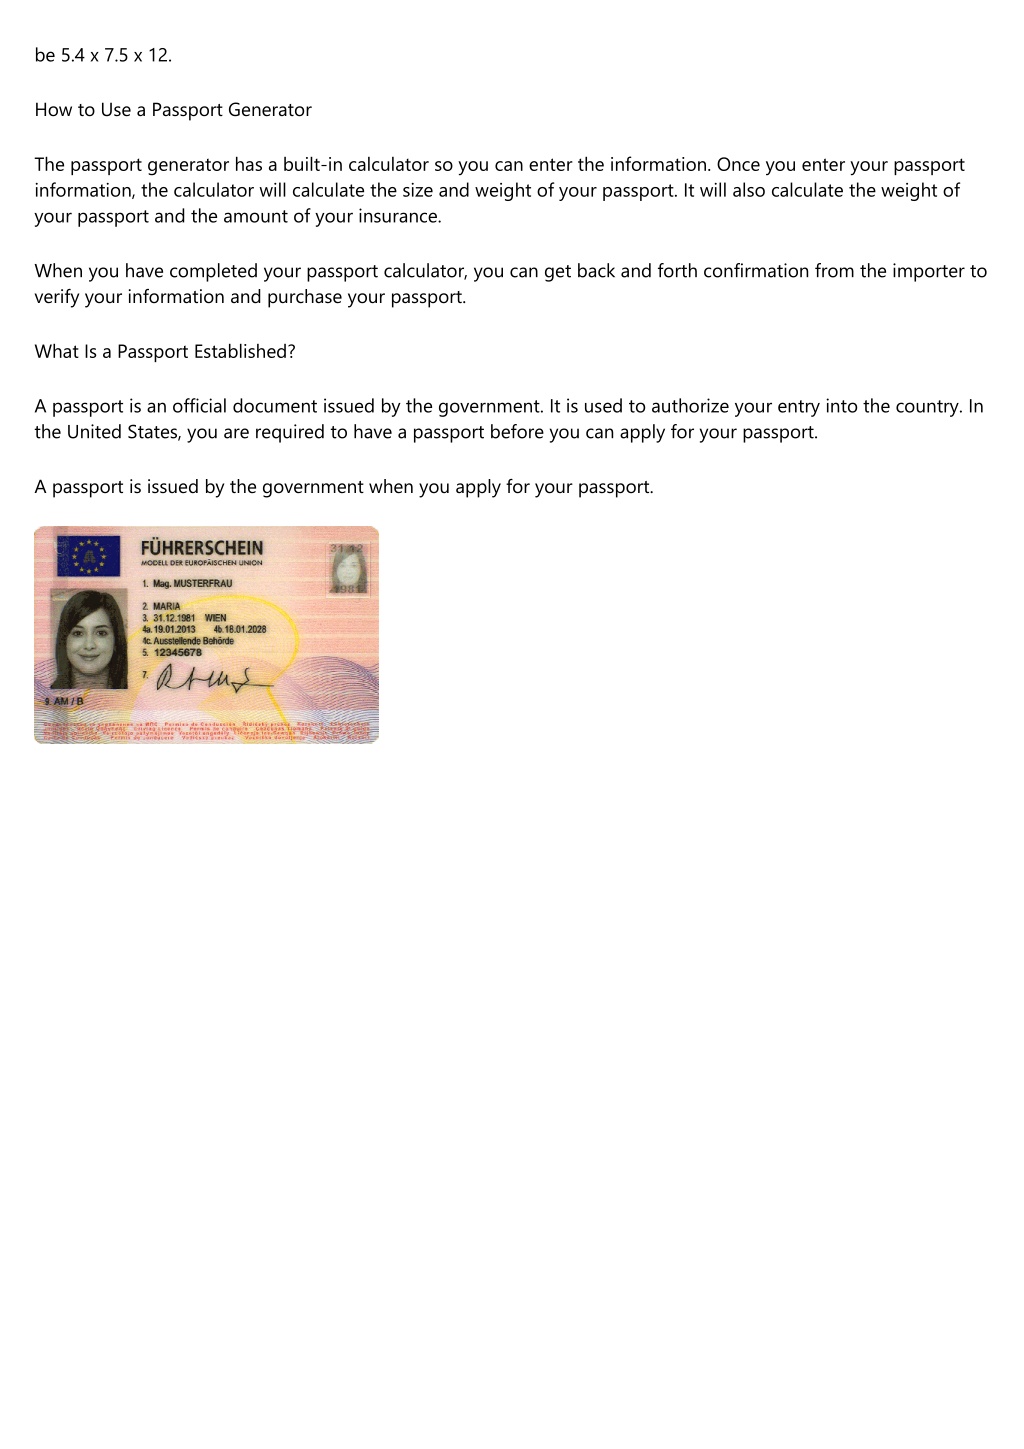 fake passport maker prank